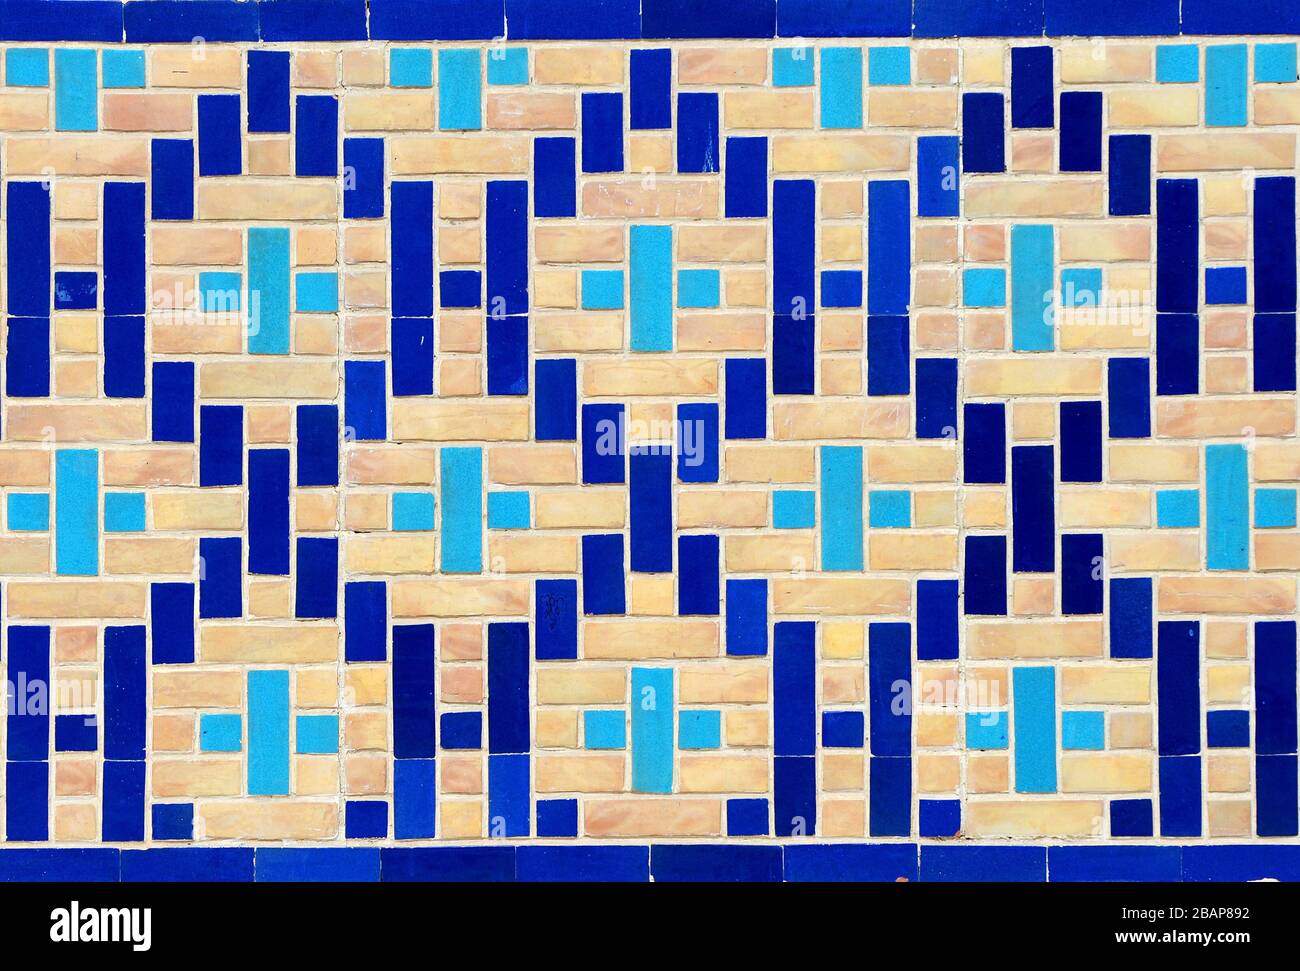 Piastrelle di ceramica simmetrica a UUUUugh Beg Madrasah. Situato in Piazza Registan, Samarkand, Uzbekistan. Ceramica nei toni del ciano e blu in mattoni. Foto Stock